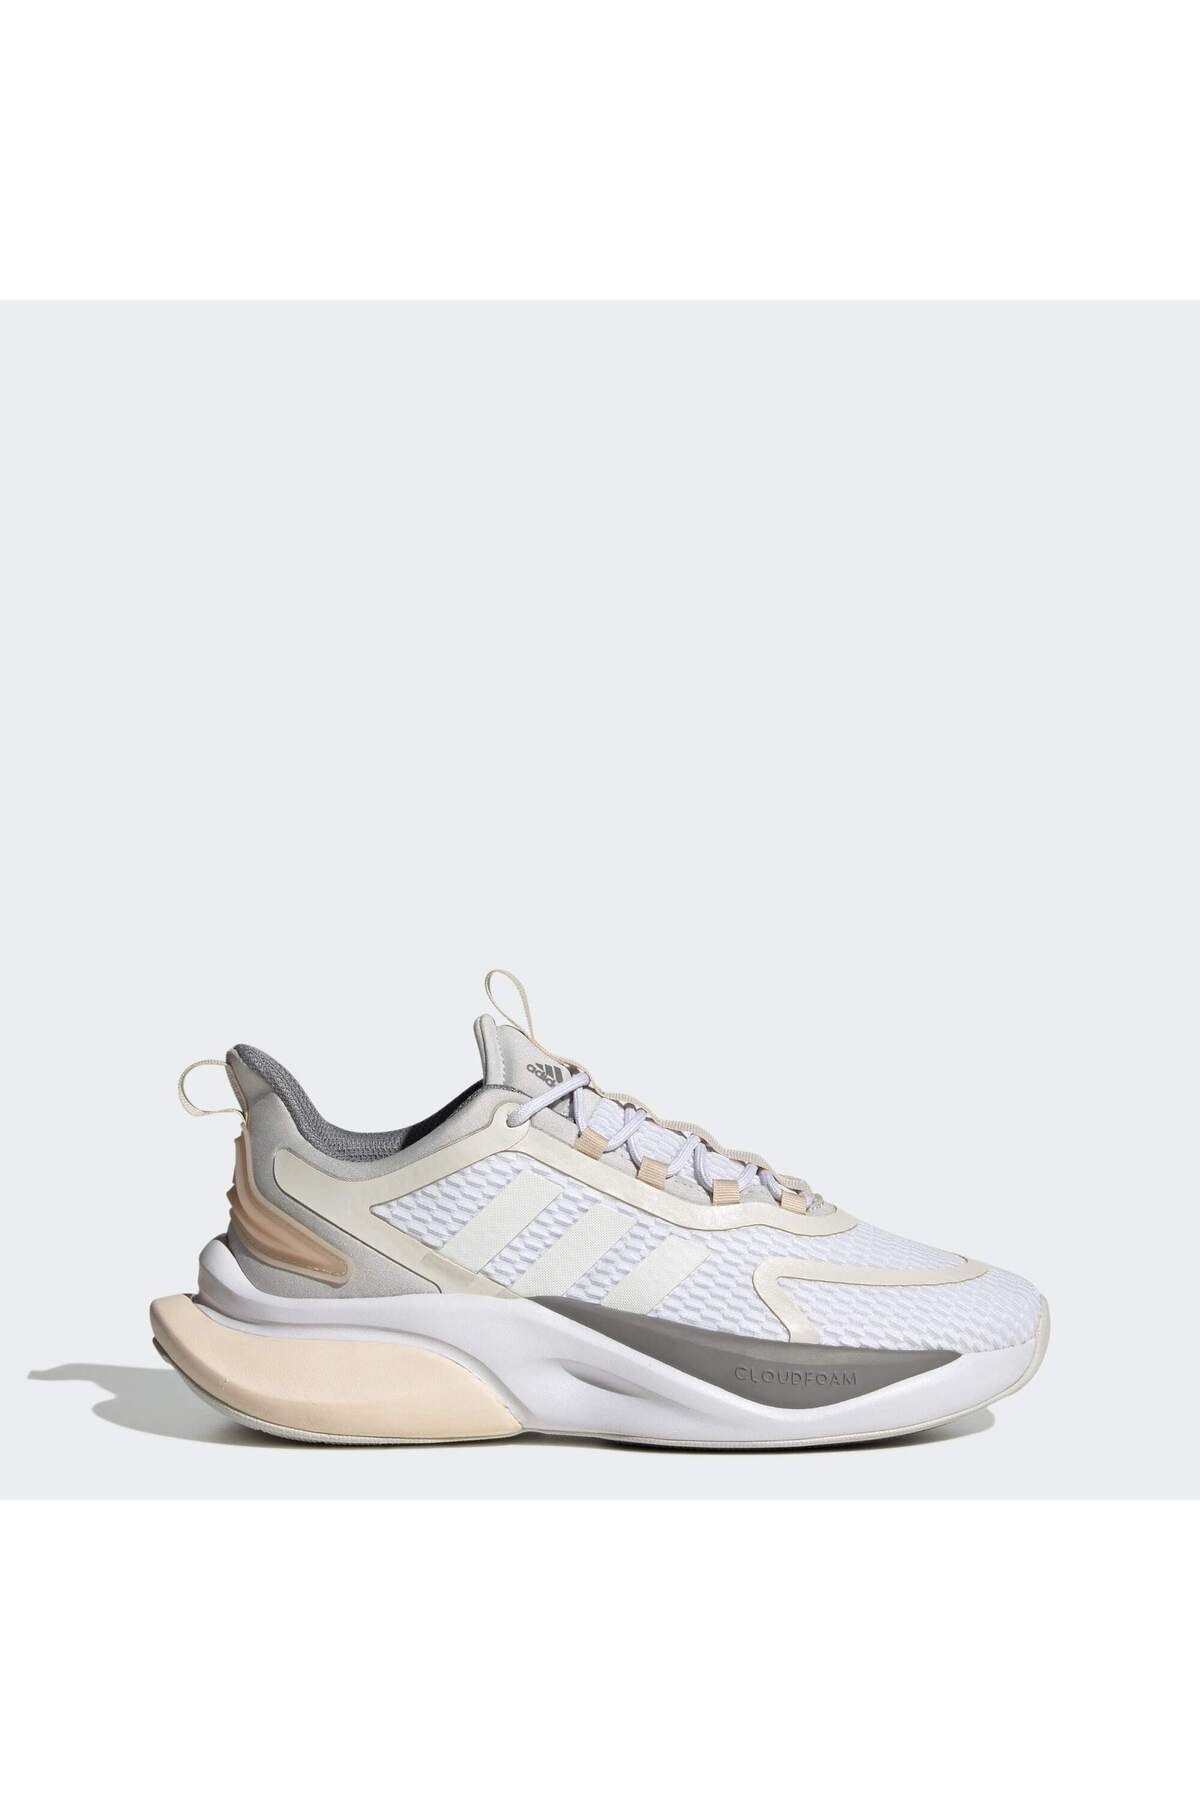 adidas Alphabounce Kadın Koşu Ayakkabısı Hp6147